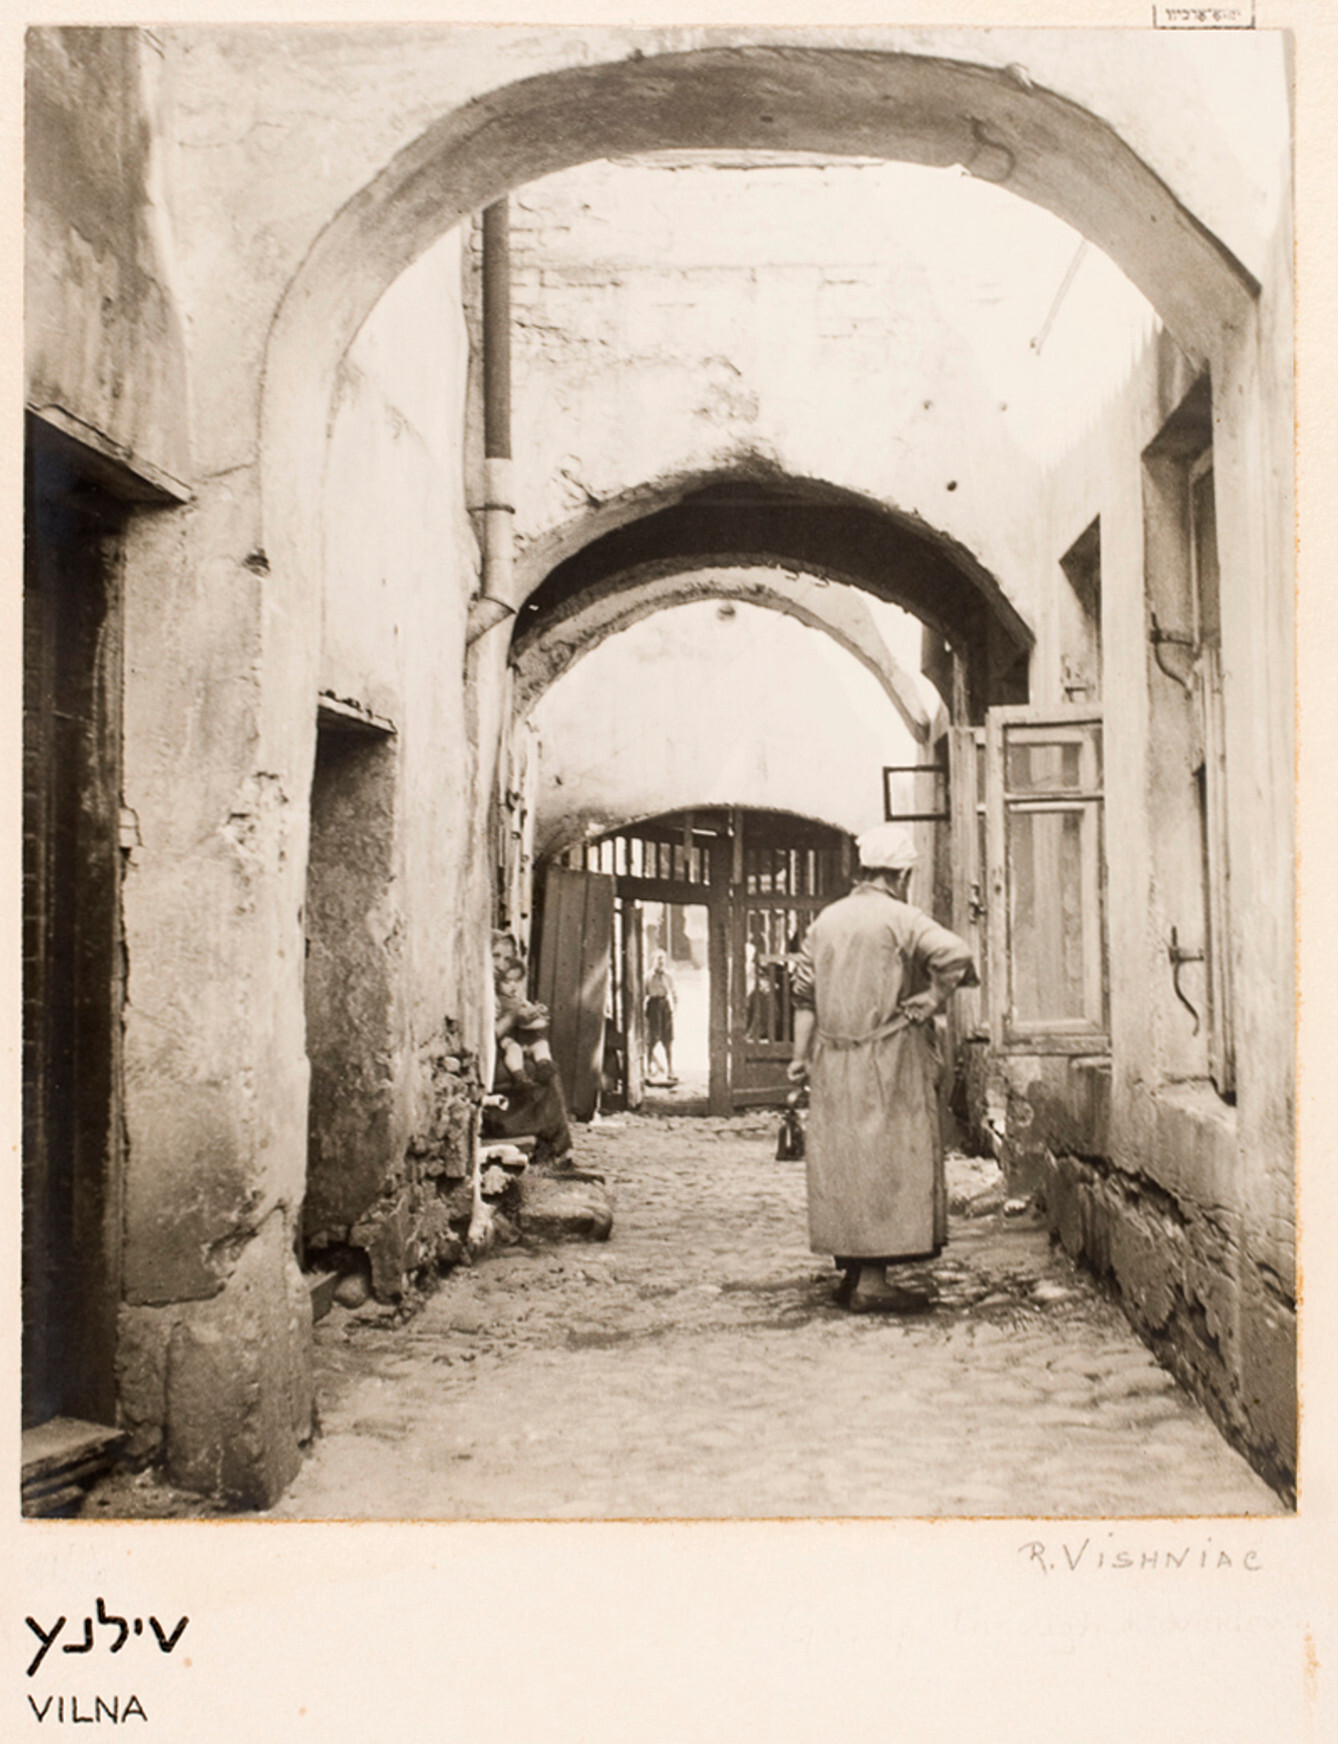 Повседневная жизнь в старом гетто, Вильно, ок. 1935-38 гг. Фотограф Роман Вишняк